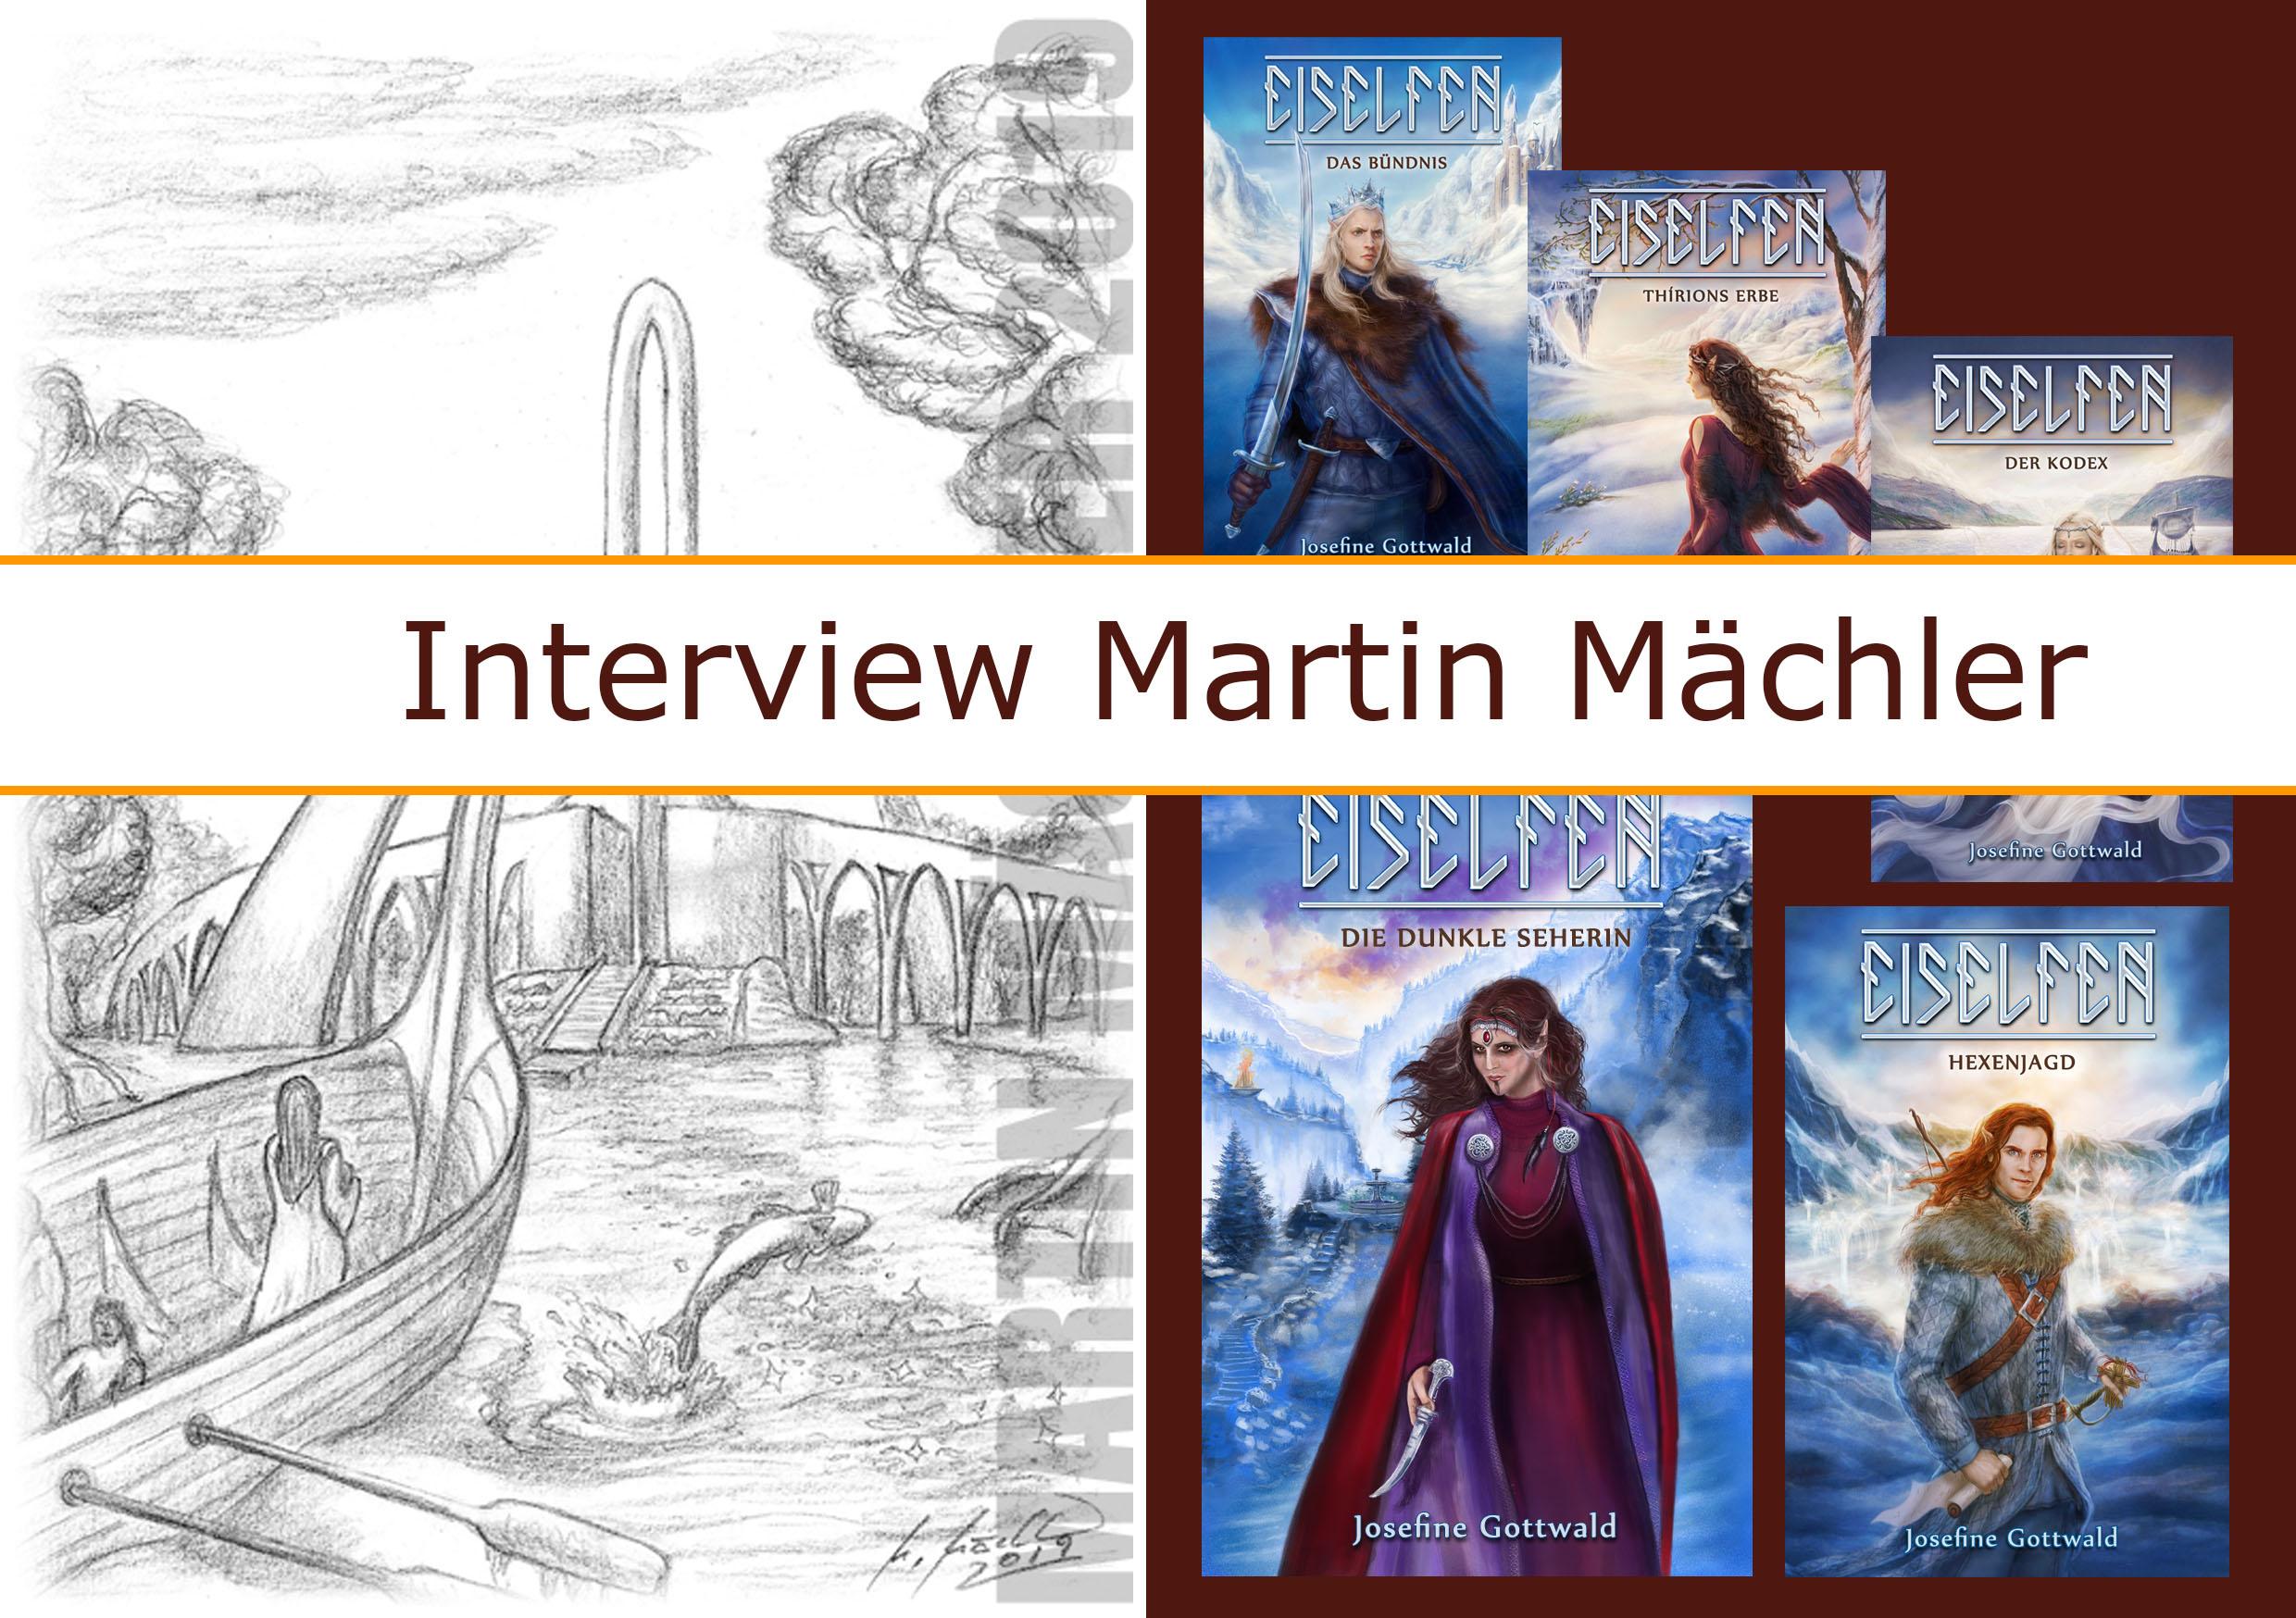 [Interview] Martin Mächler - Illustrator der Eiselfenreihe